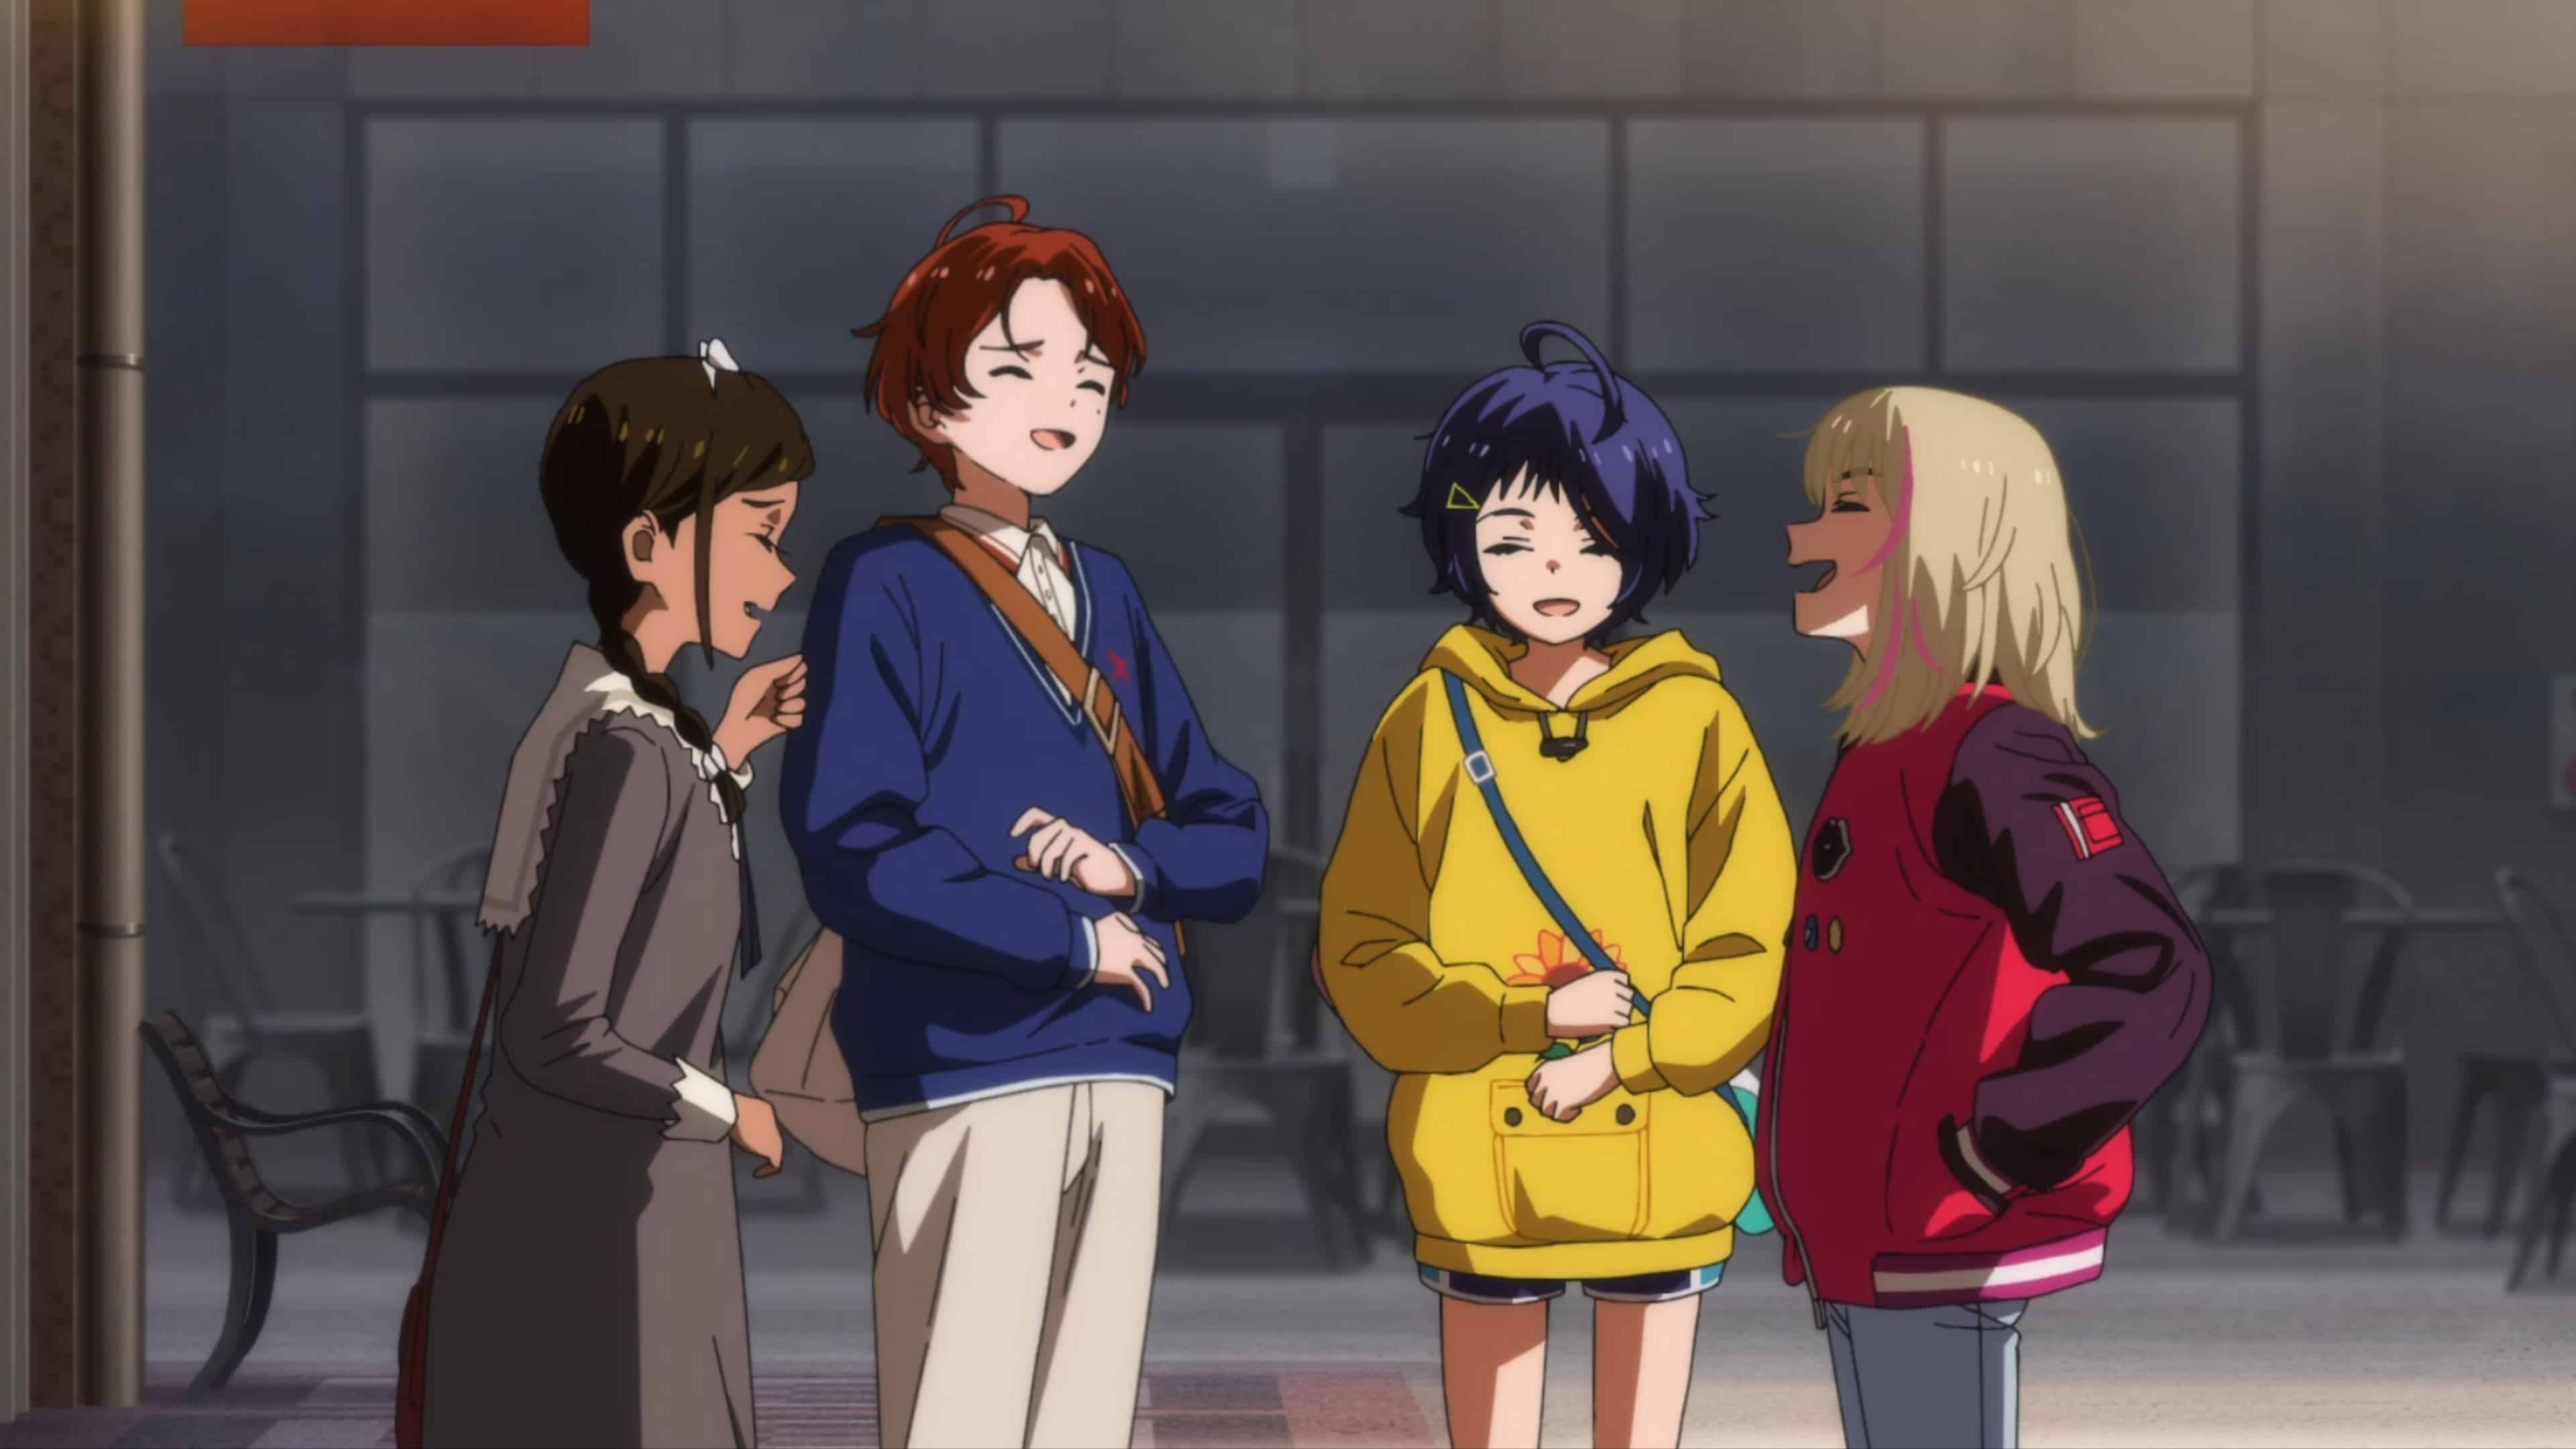 Neiru, Momoe, Ai, and Rika laughing